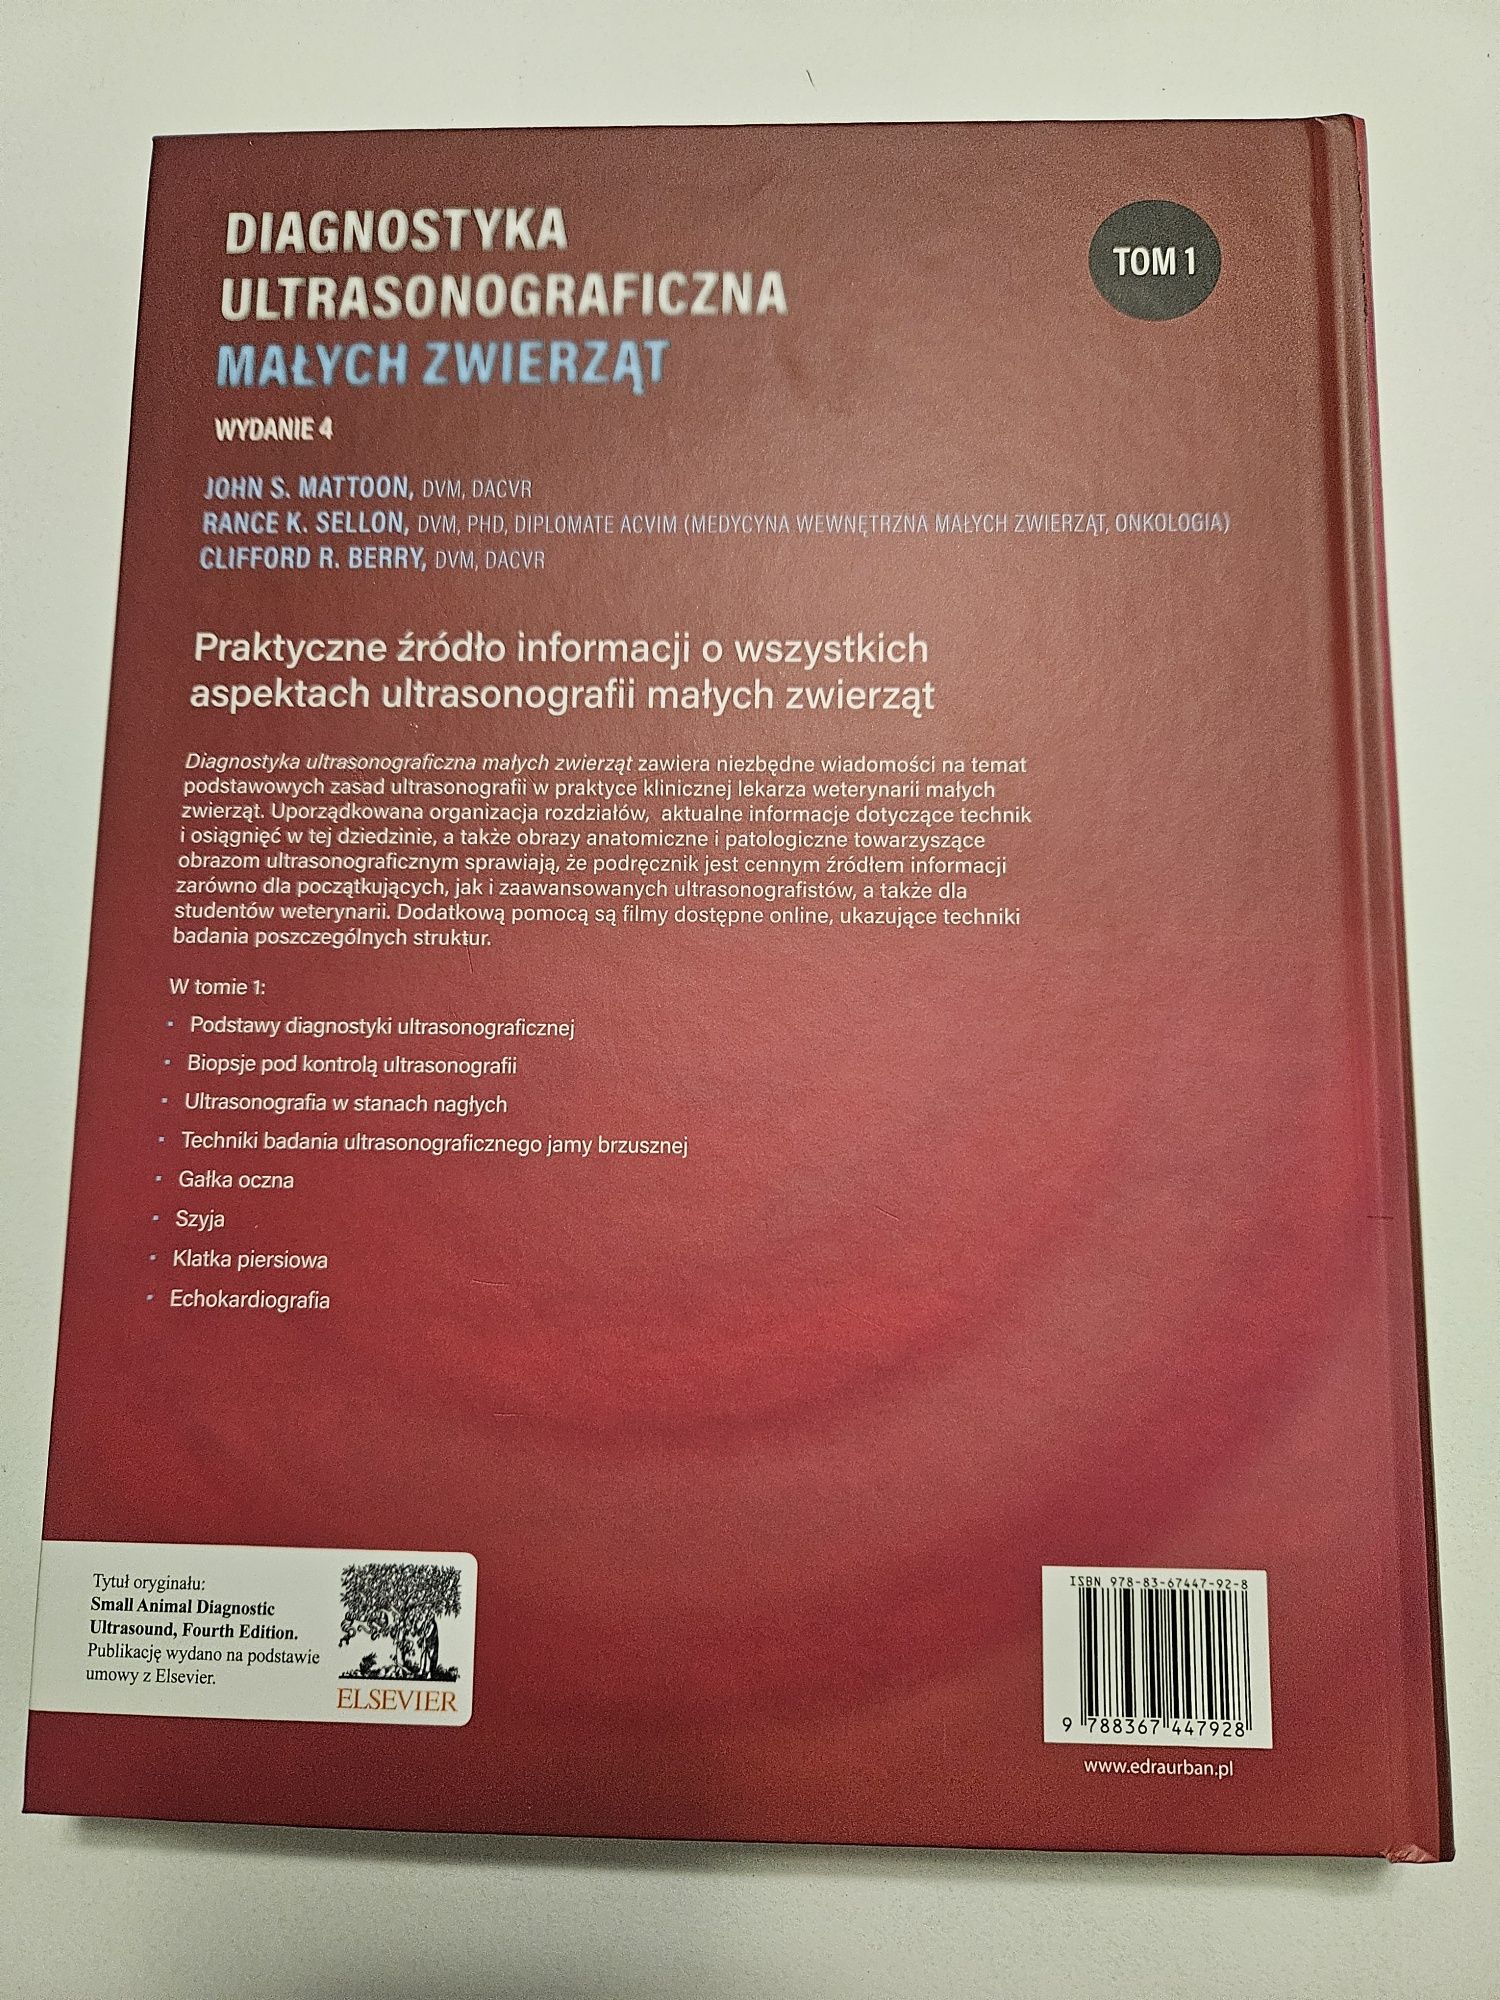 Diagnostyka ultrasonograficzna małych zwierząt,  tom 1, wydanie 4.